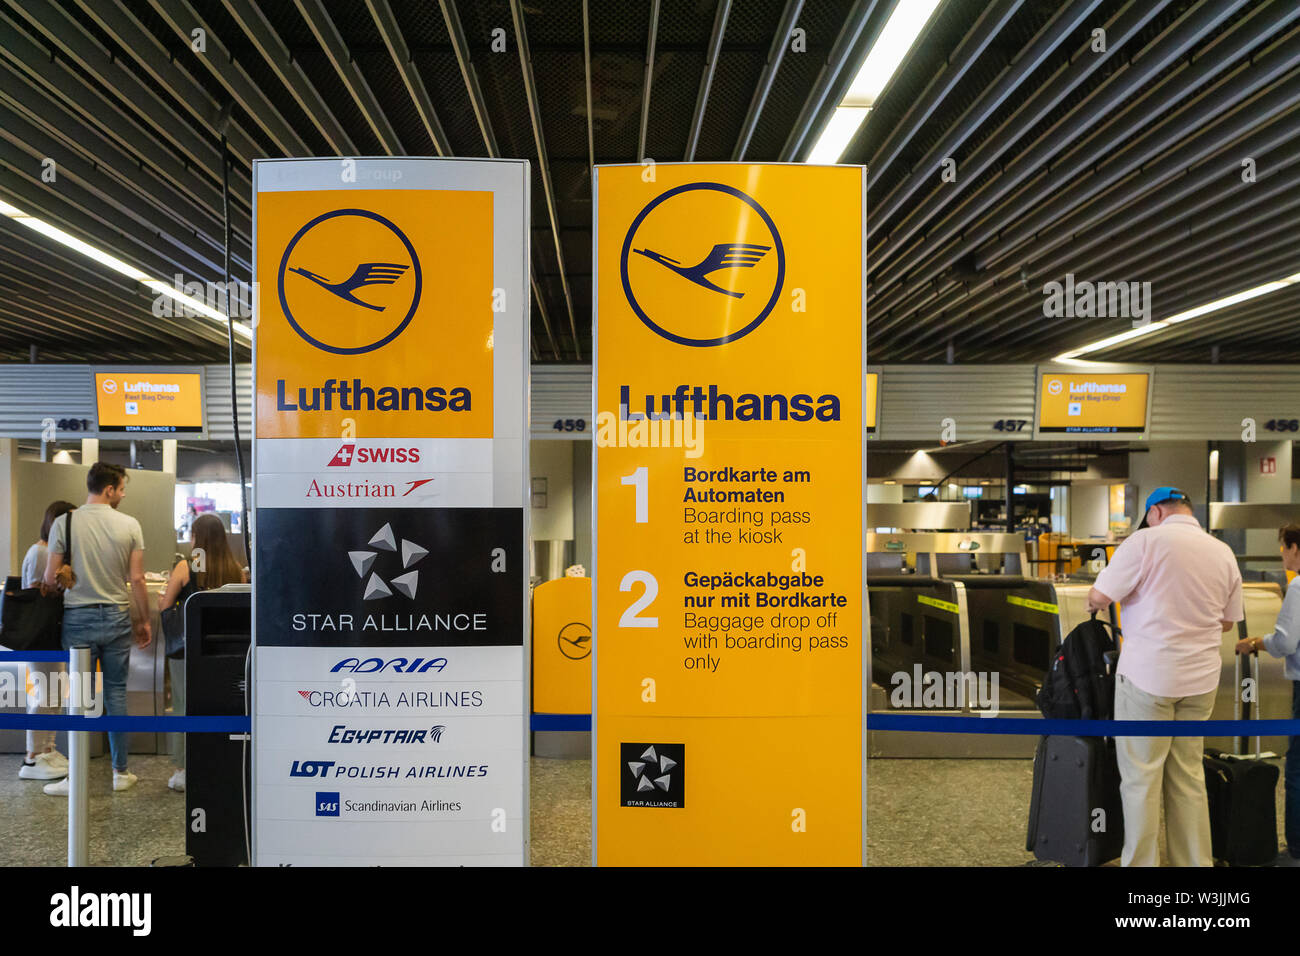 Frankfurt, Deutschland - Juli 2019: Lufthansa Airline Check-in-Schalter im  Flughafen Frankfurt. Lufthansa ist die größte Fluggesellschaft in EU  Stockfotografie - Alamy